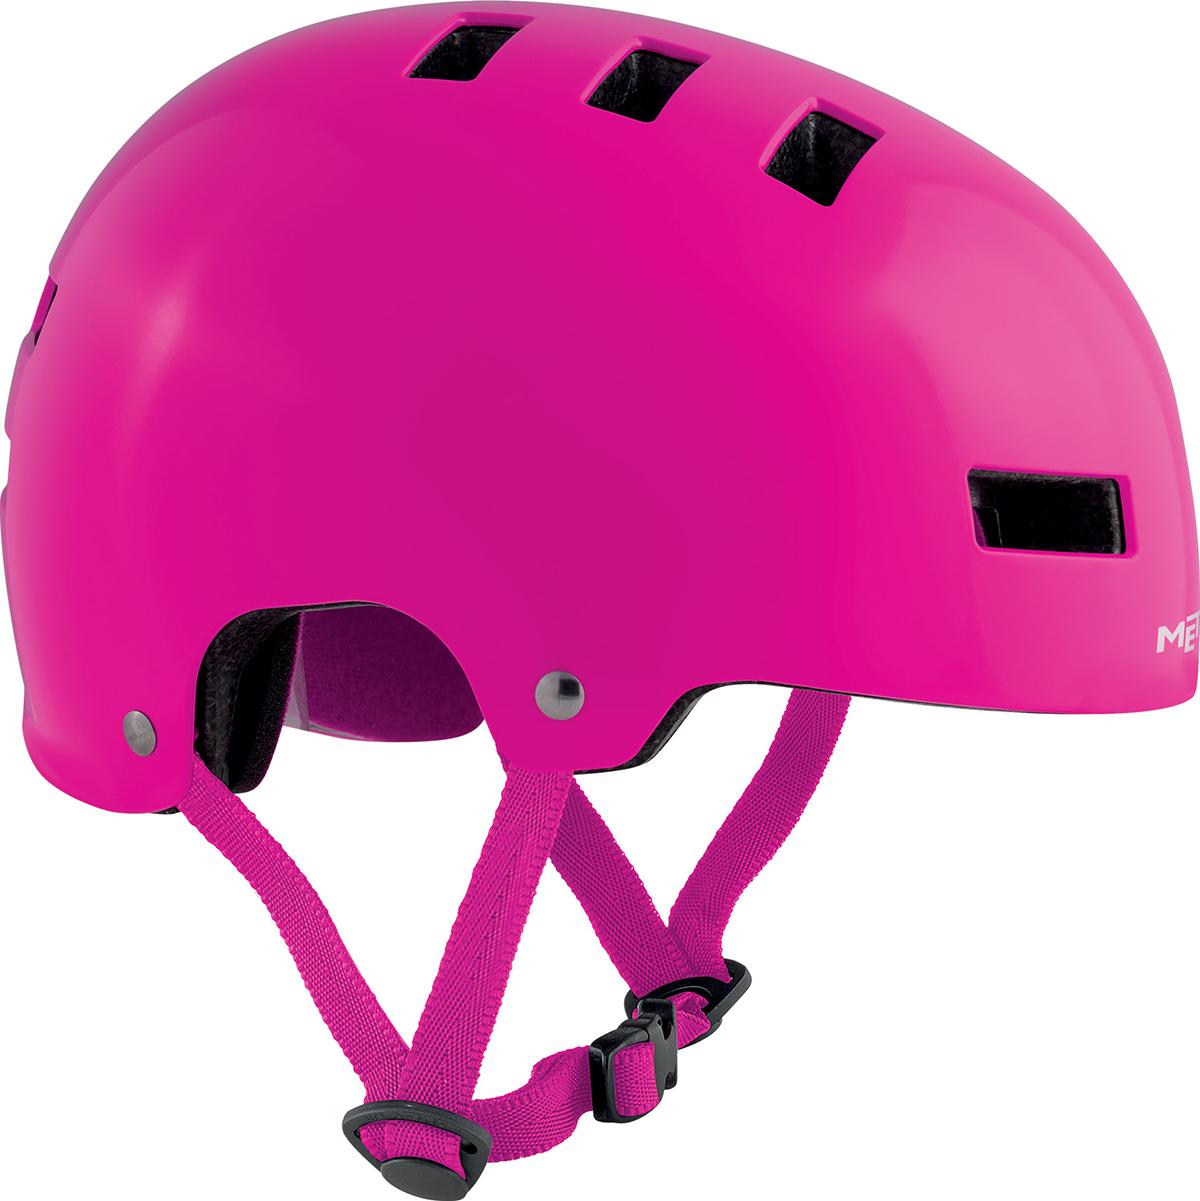 Met Yoyo Helmet  Pink